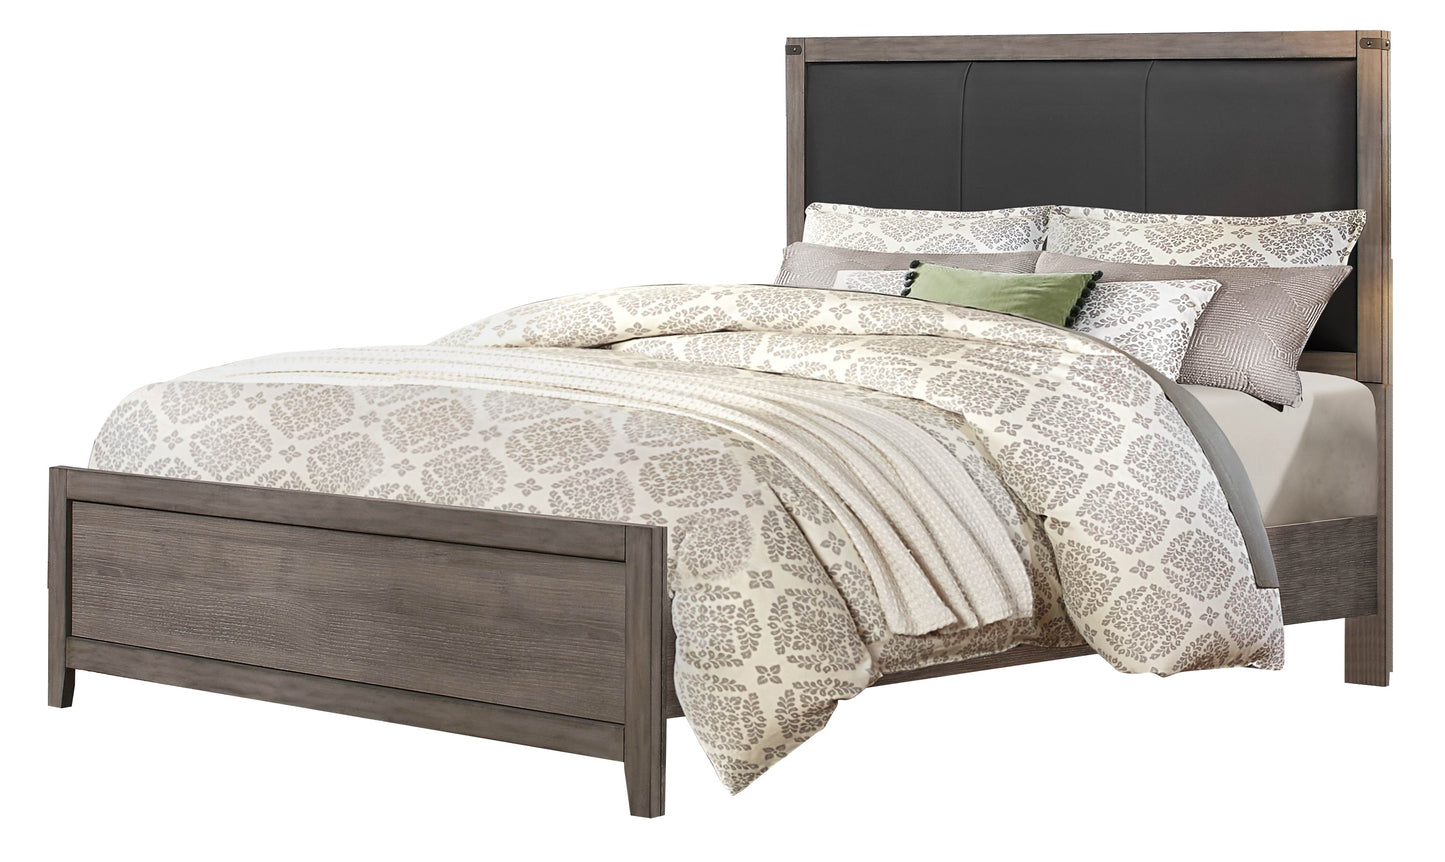 Walen Industrial 6PC Bedroom Set Queen Bed, Dresser, Mirror, 2 Nightstand, Chest in Grey